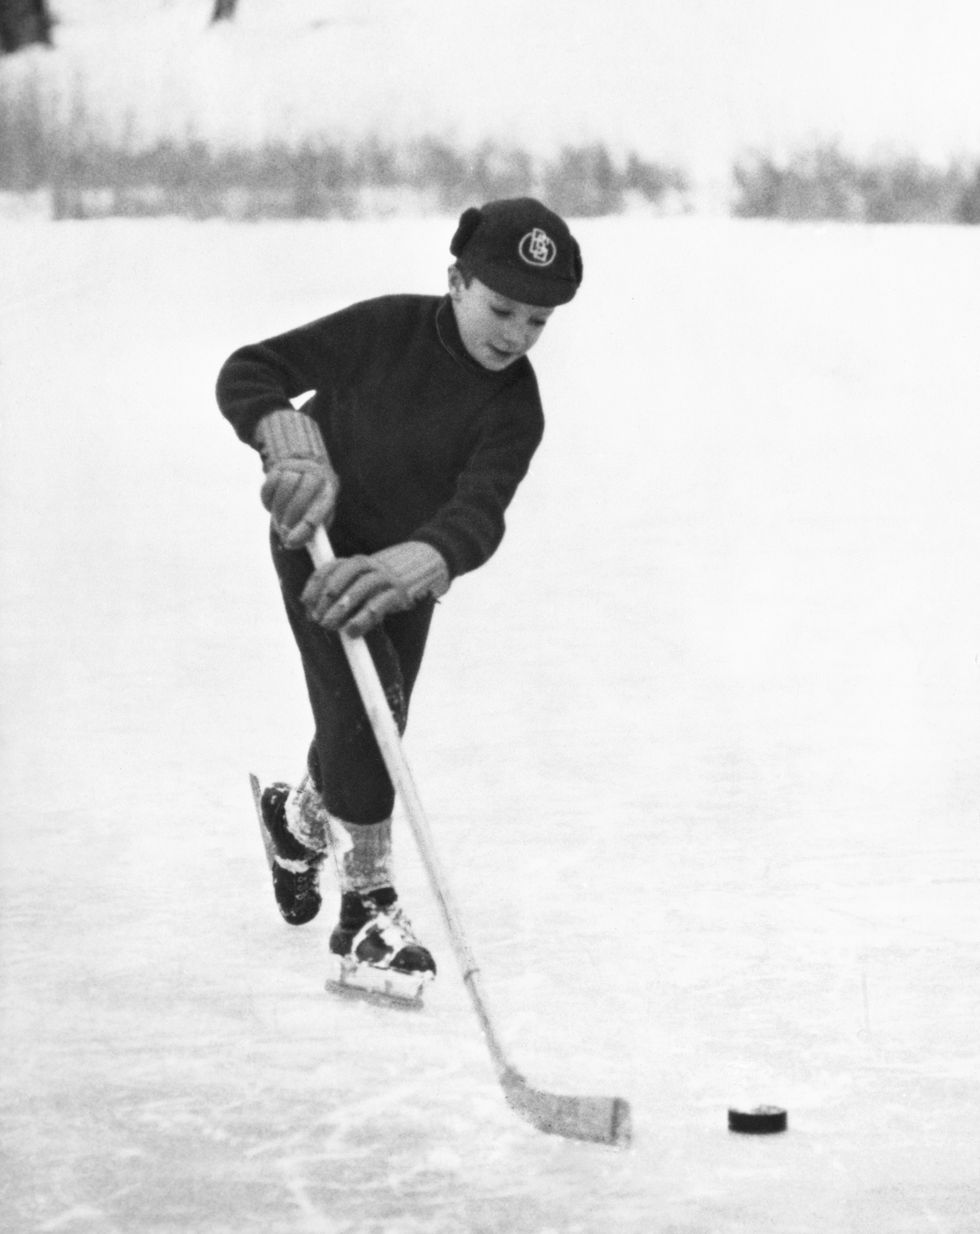 prince carl gustaf playing hockey